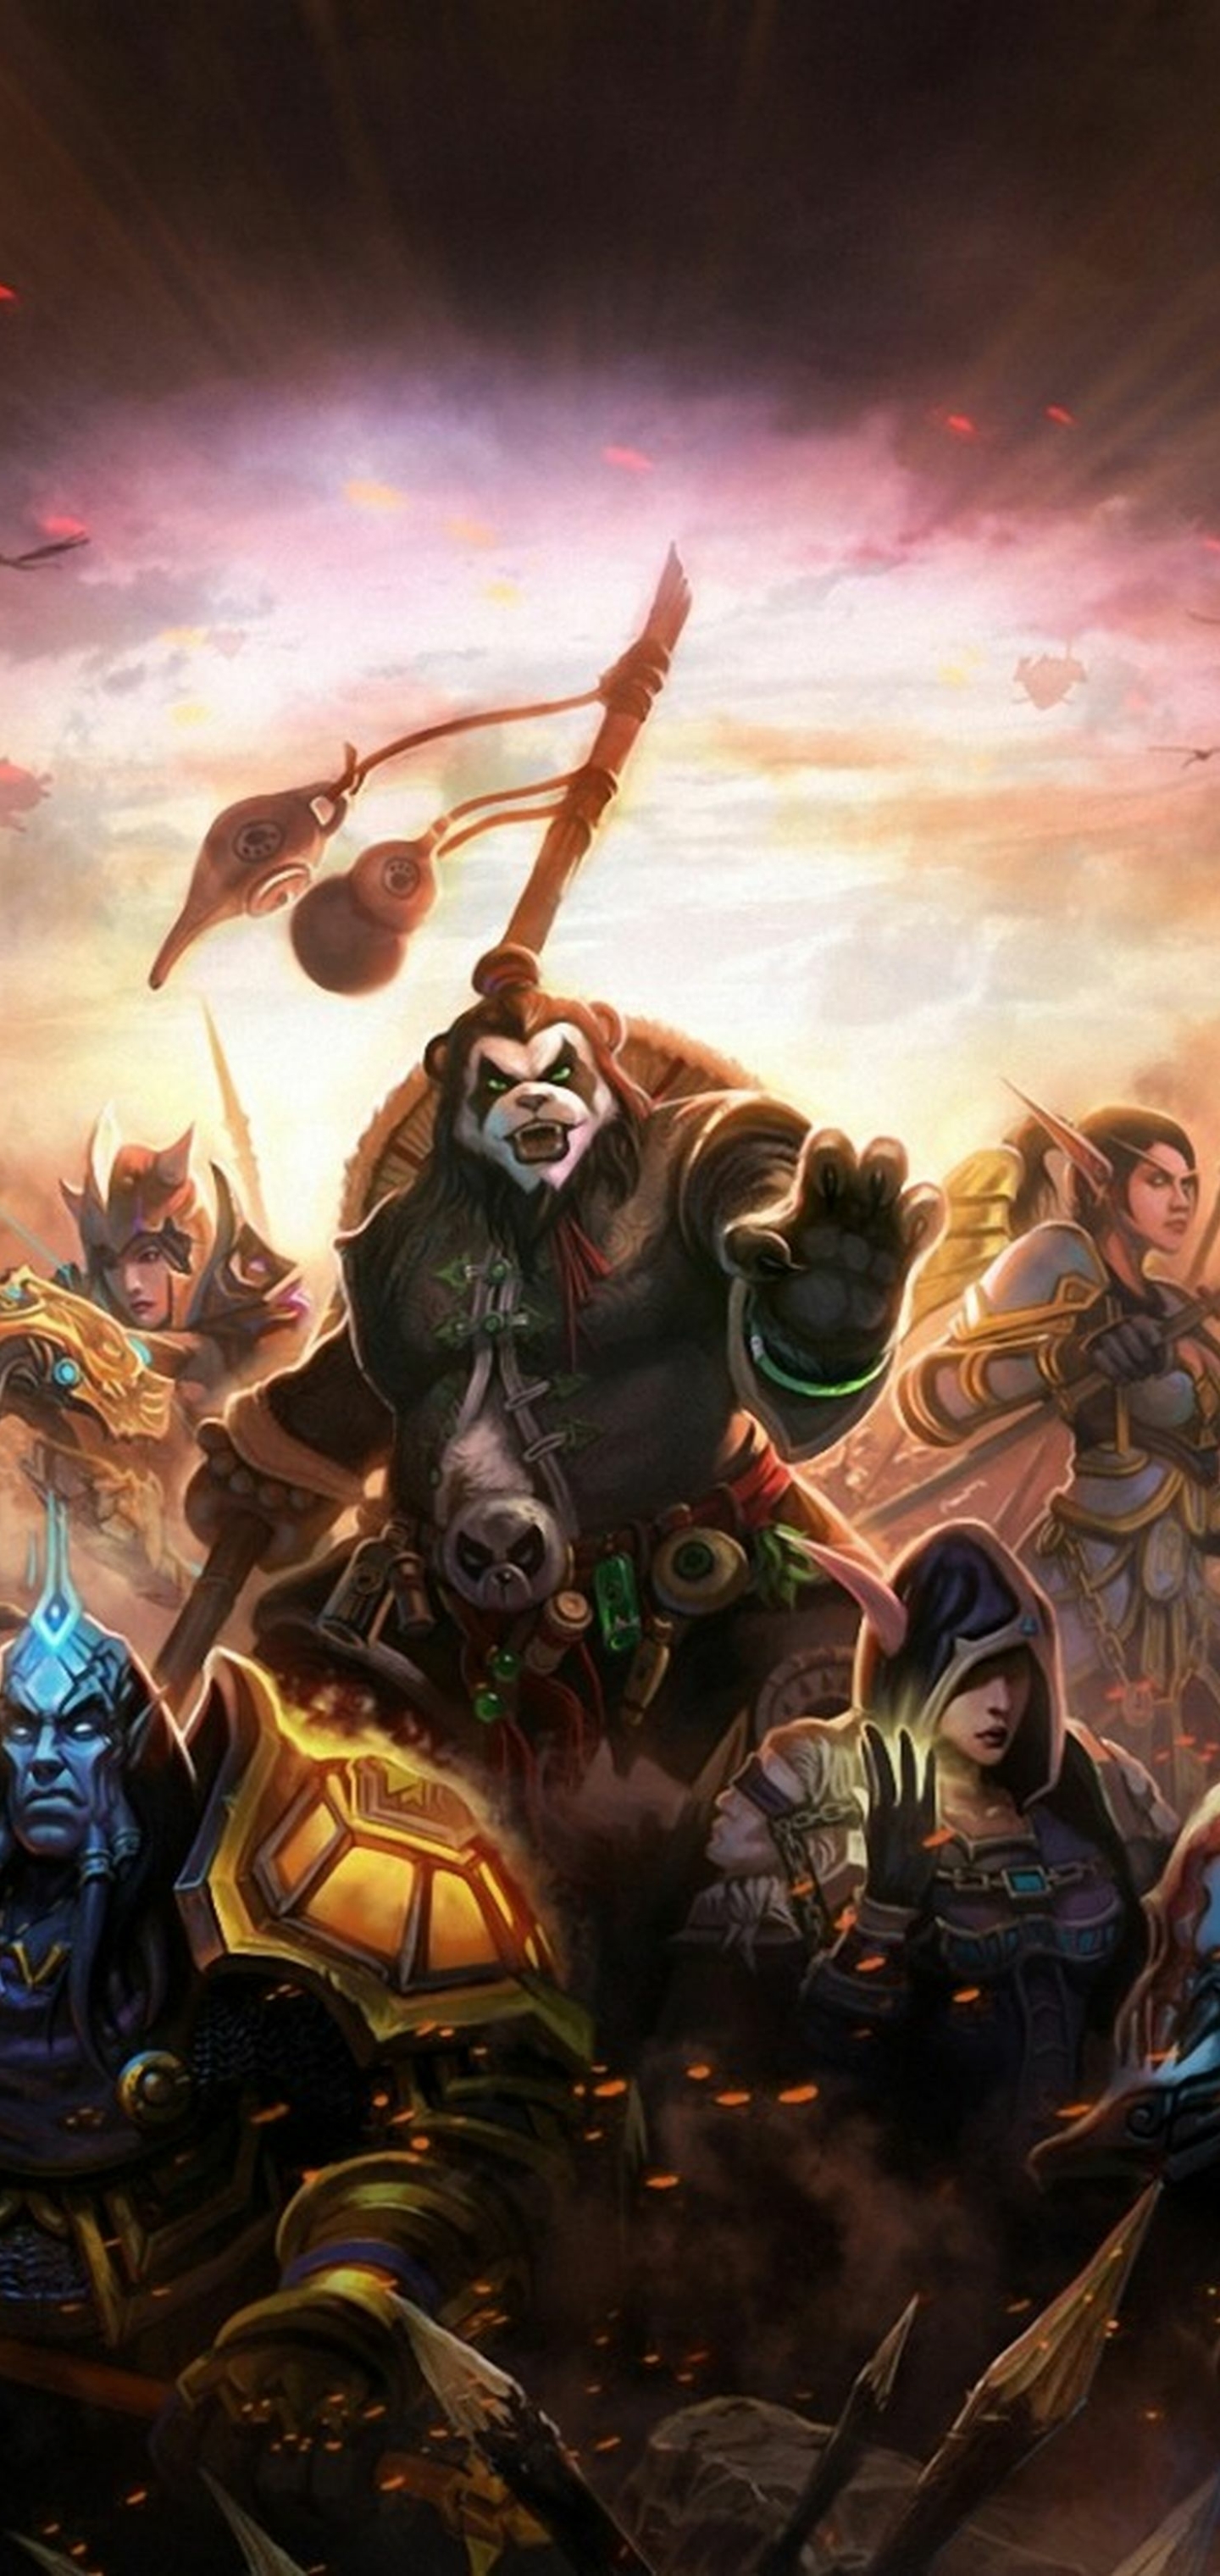 Скачать обои бесплатно Видеоигры, Мир Warcraft, Мир Warcraft: Туманы Пандарии картинка на рабочий стол ПК